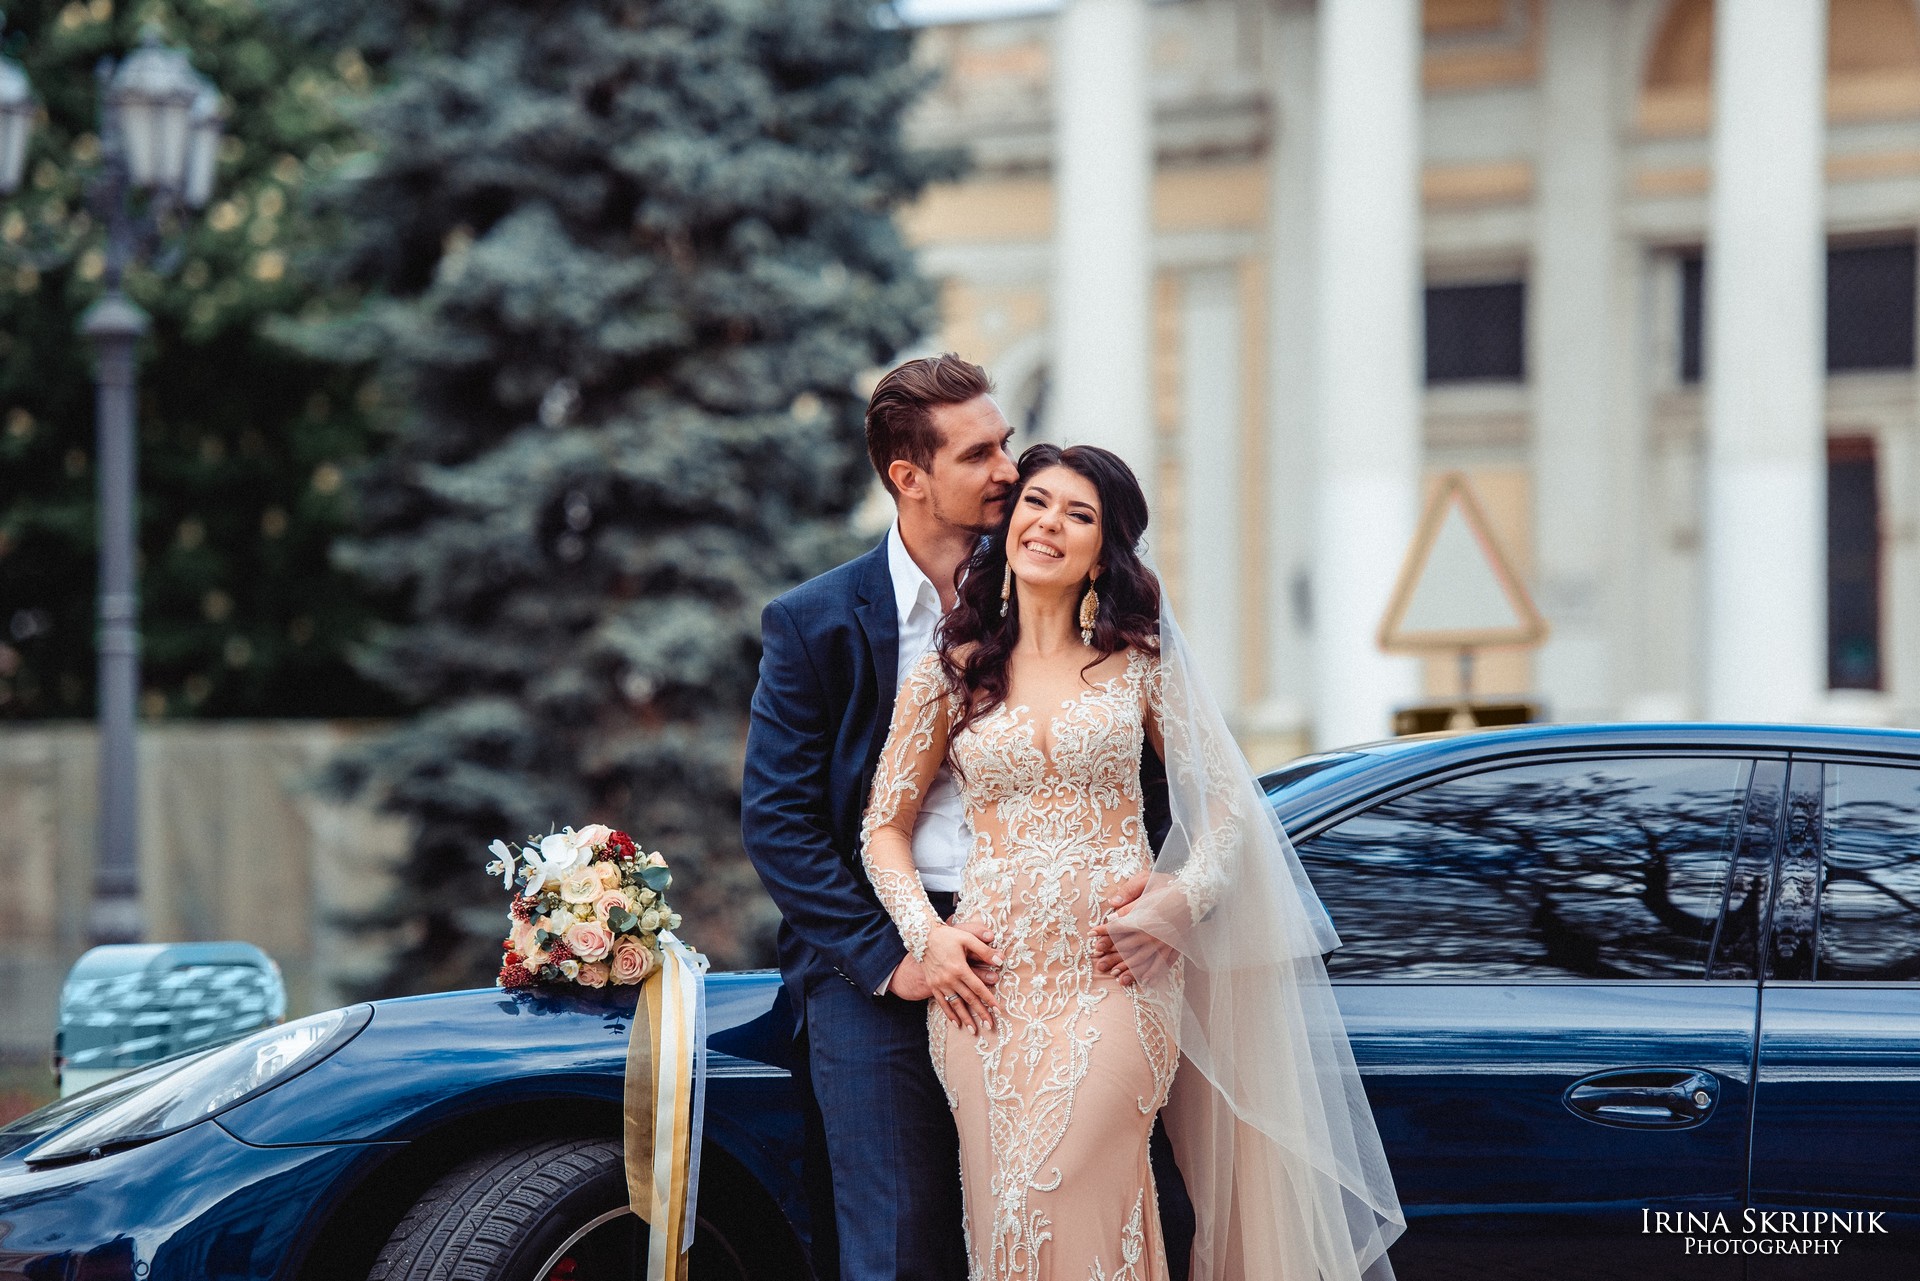 Irina Skripnik Weddings 01185